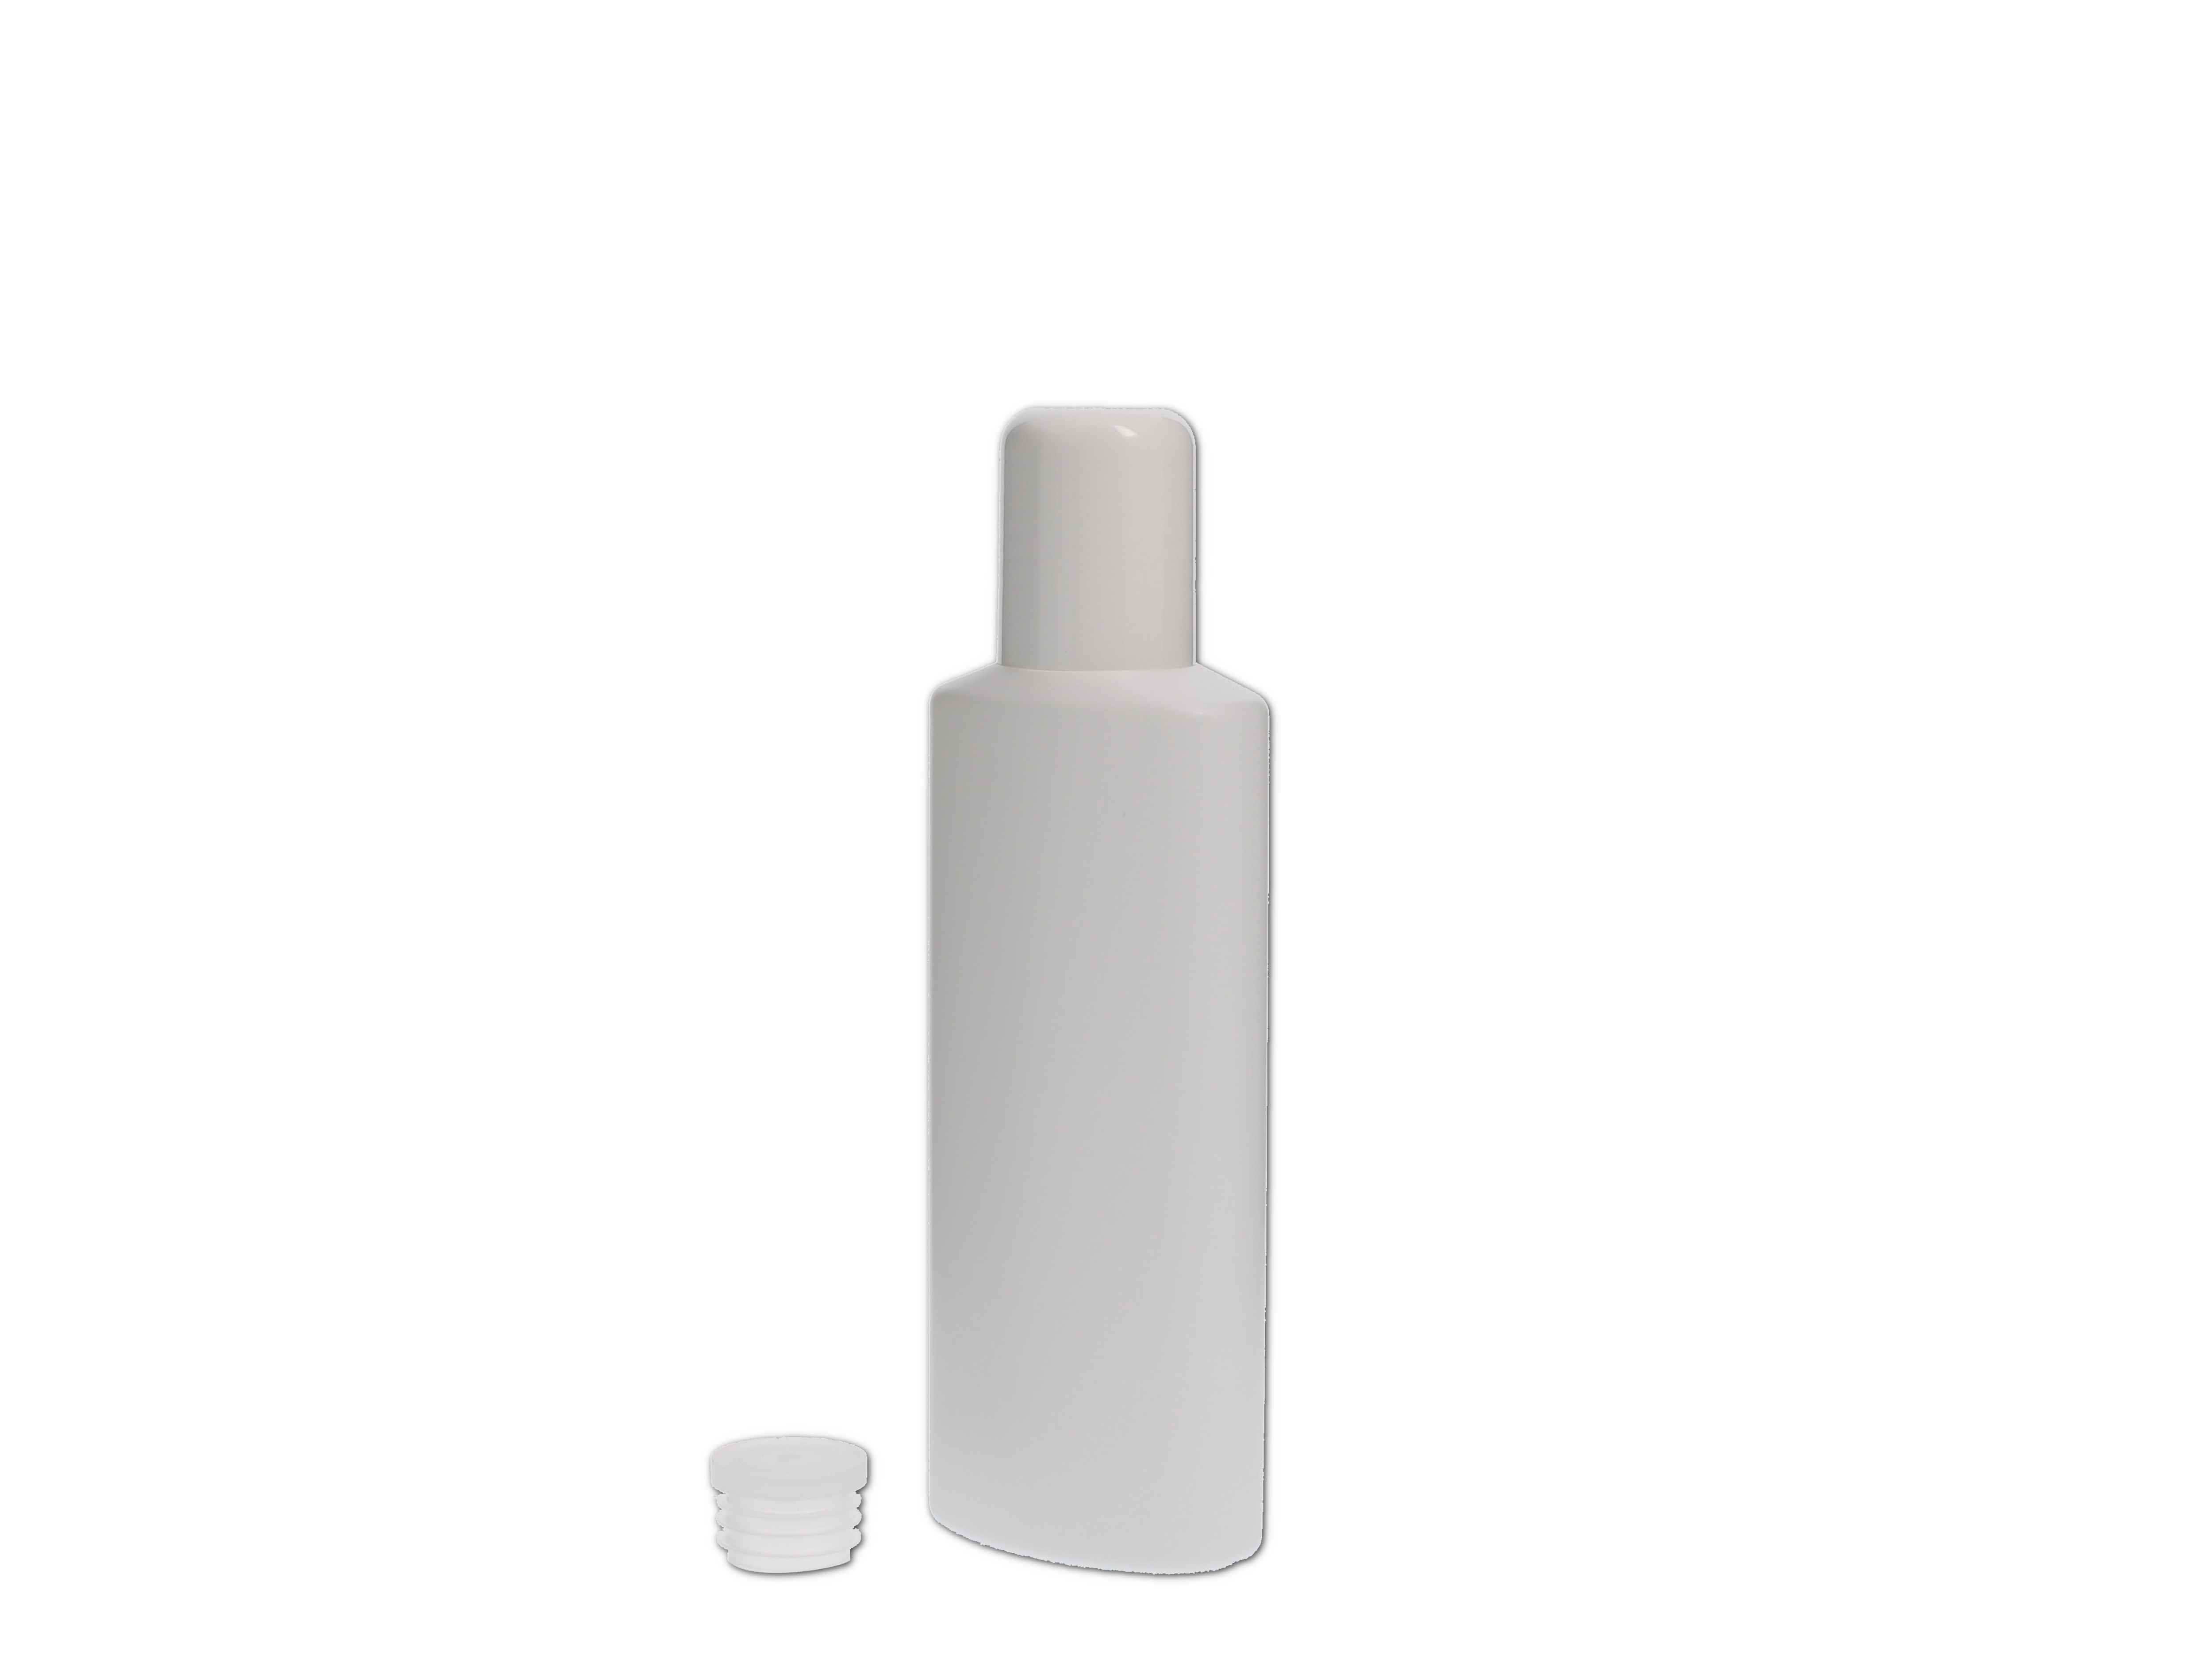    Kosmetikflasche, Kunststoff weiß, oval mit Spritzeinsatz 100ml